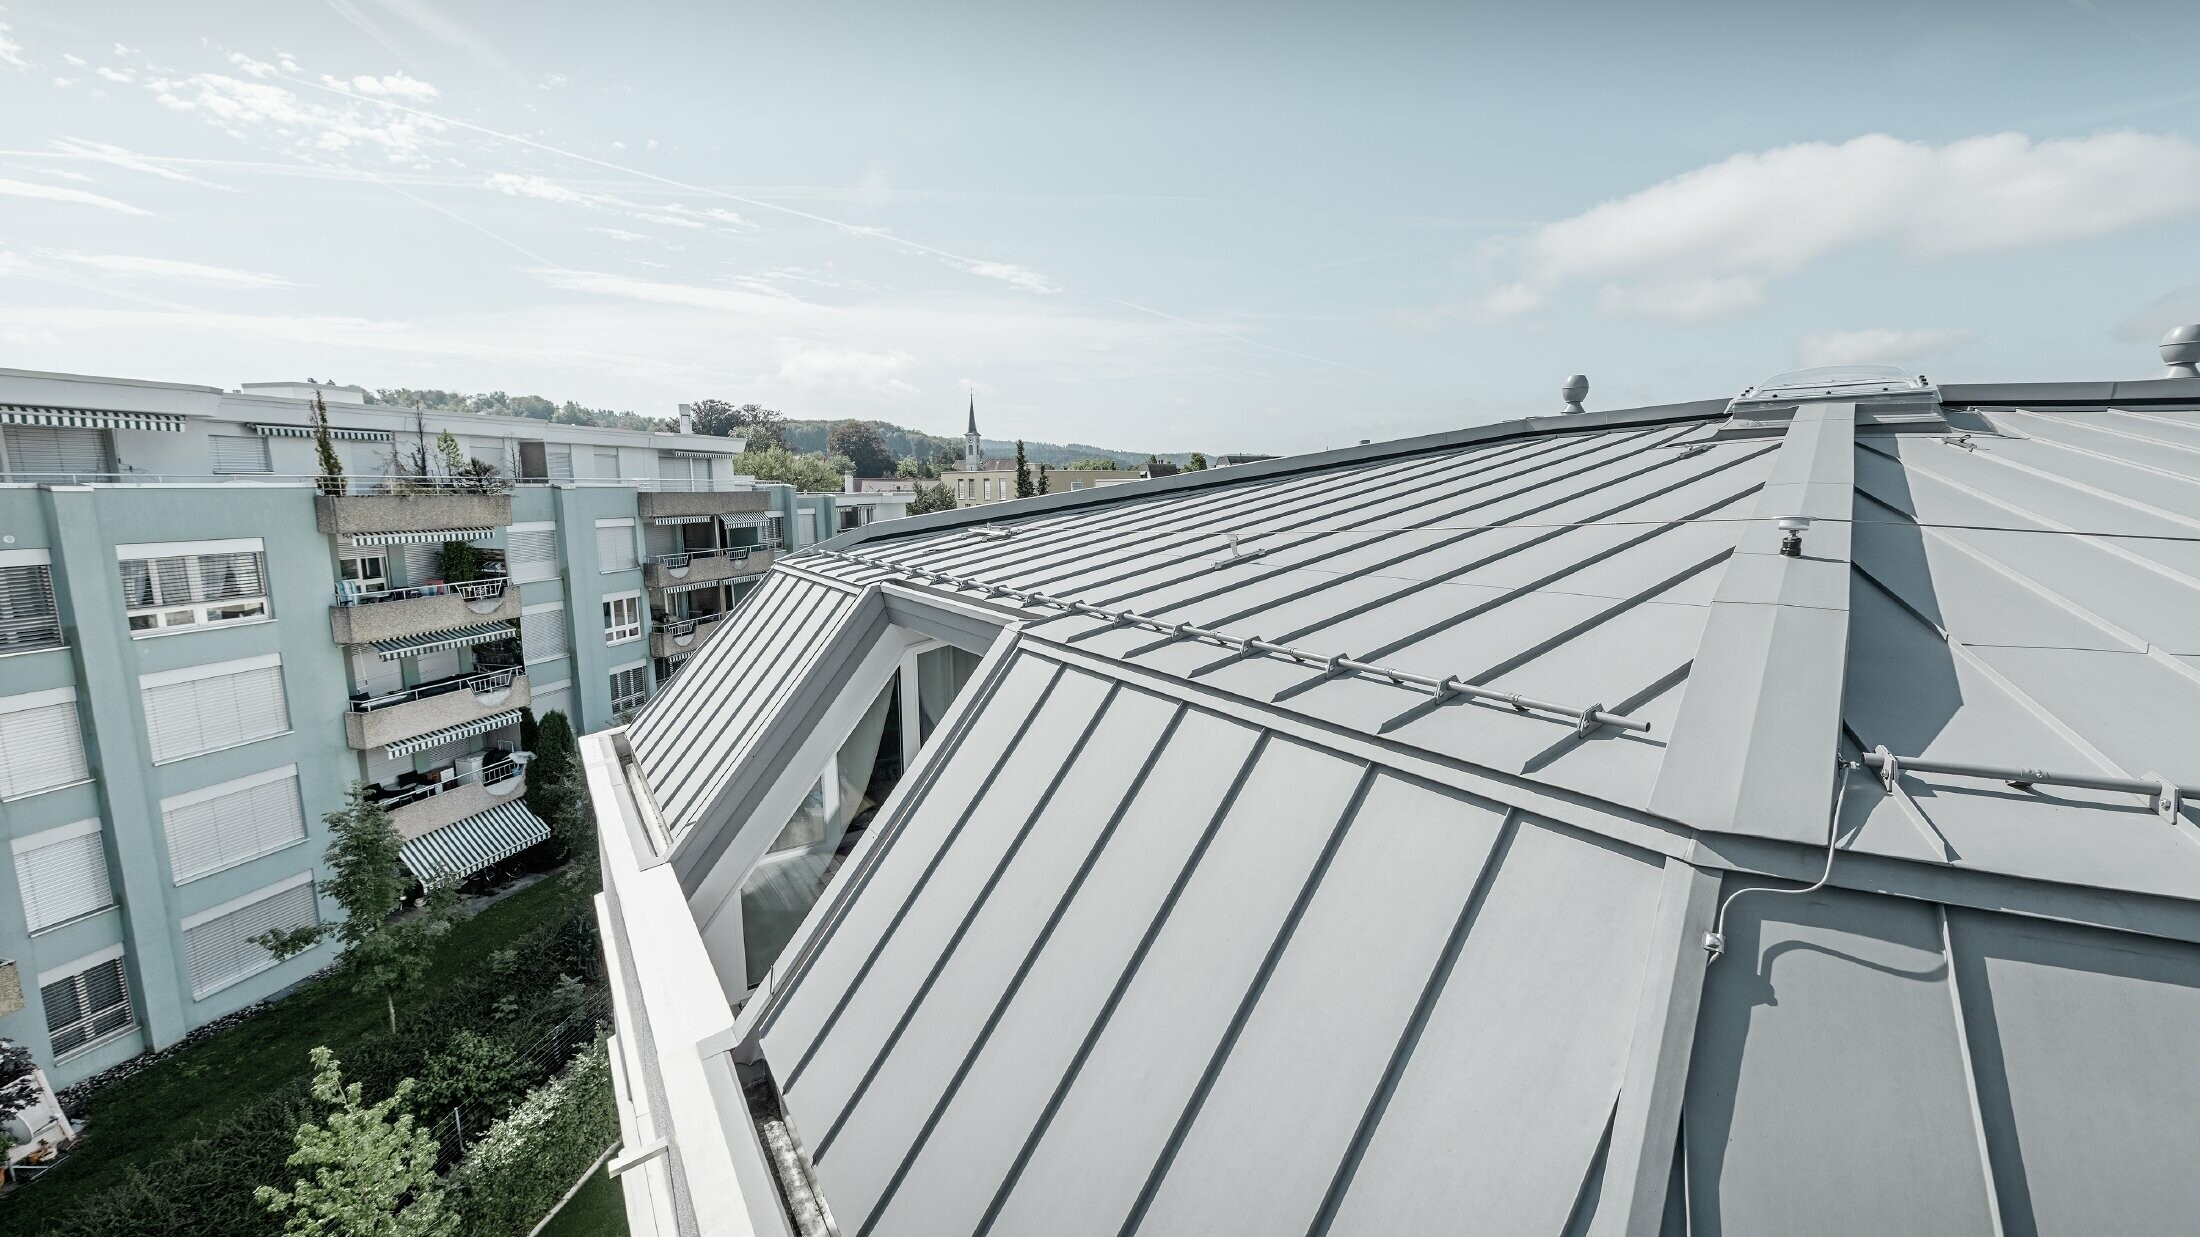 Vue détaillée de la surface de toiture d’un immeuble collectif ; toit à joint debout réalisé avec Prefalz PREFA couleur gris quartz.